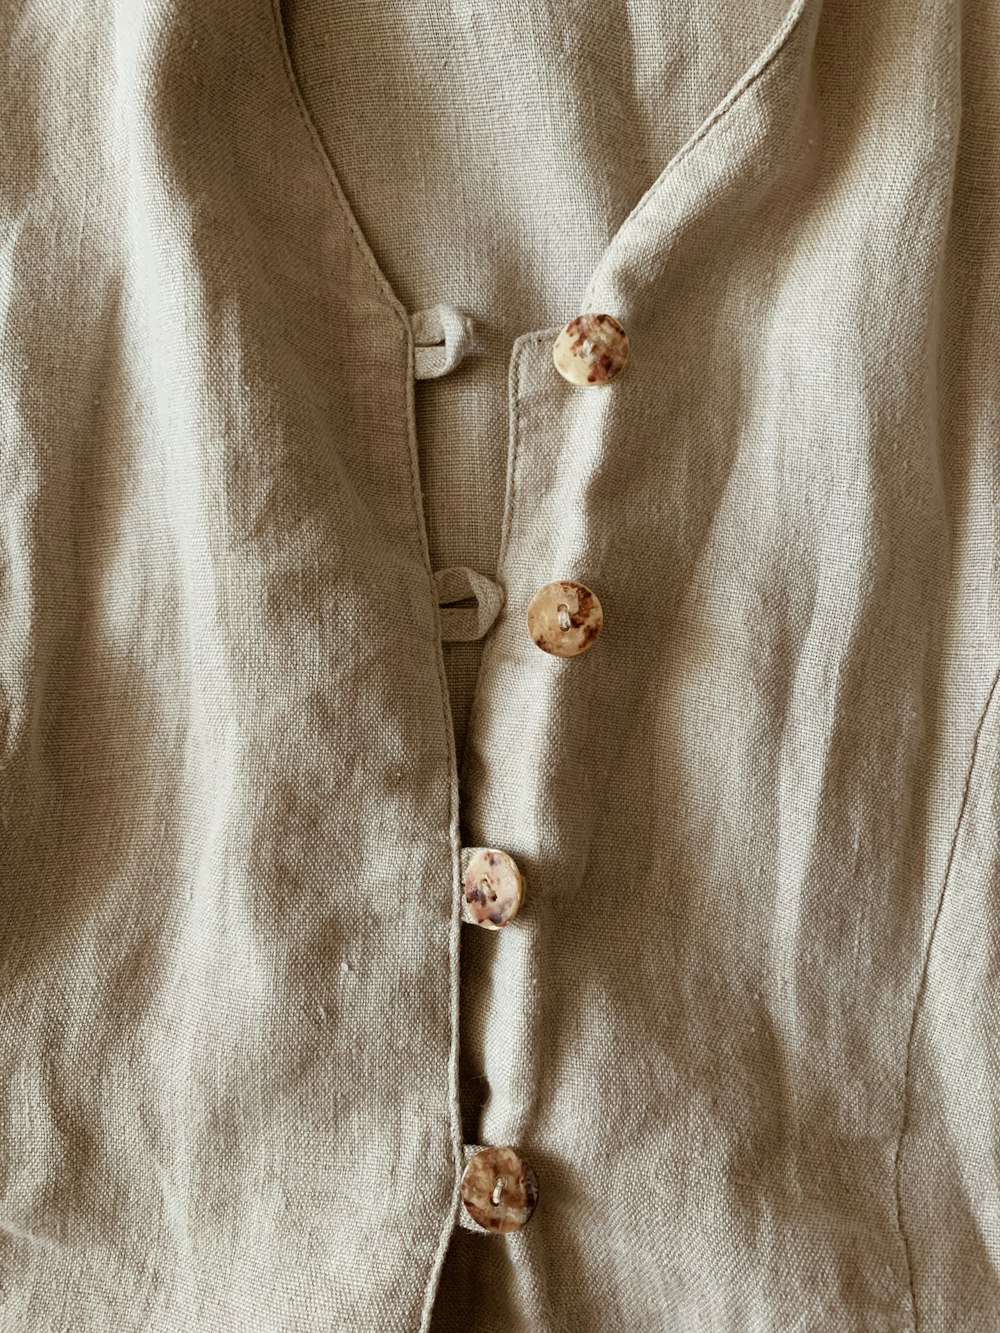 white button up dress shirt